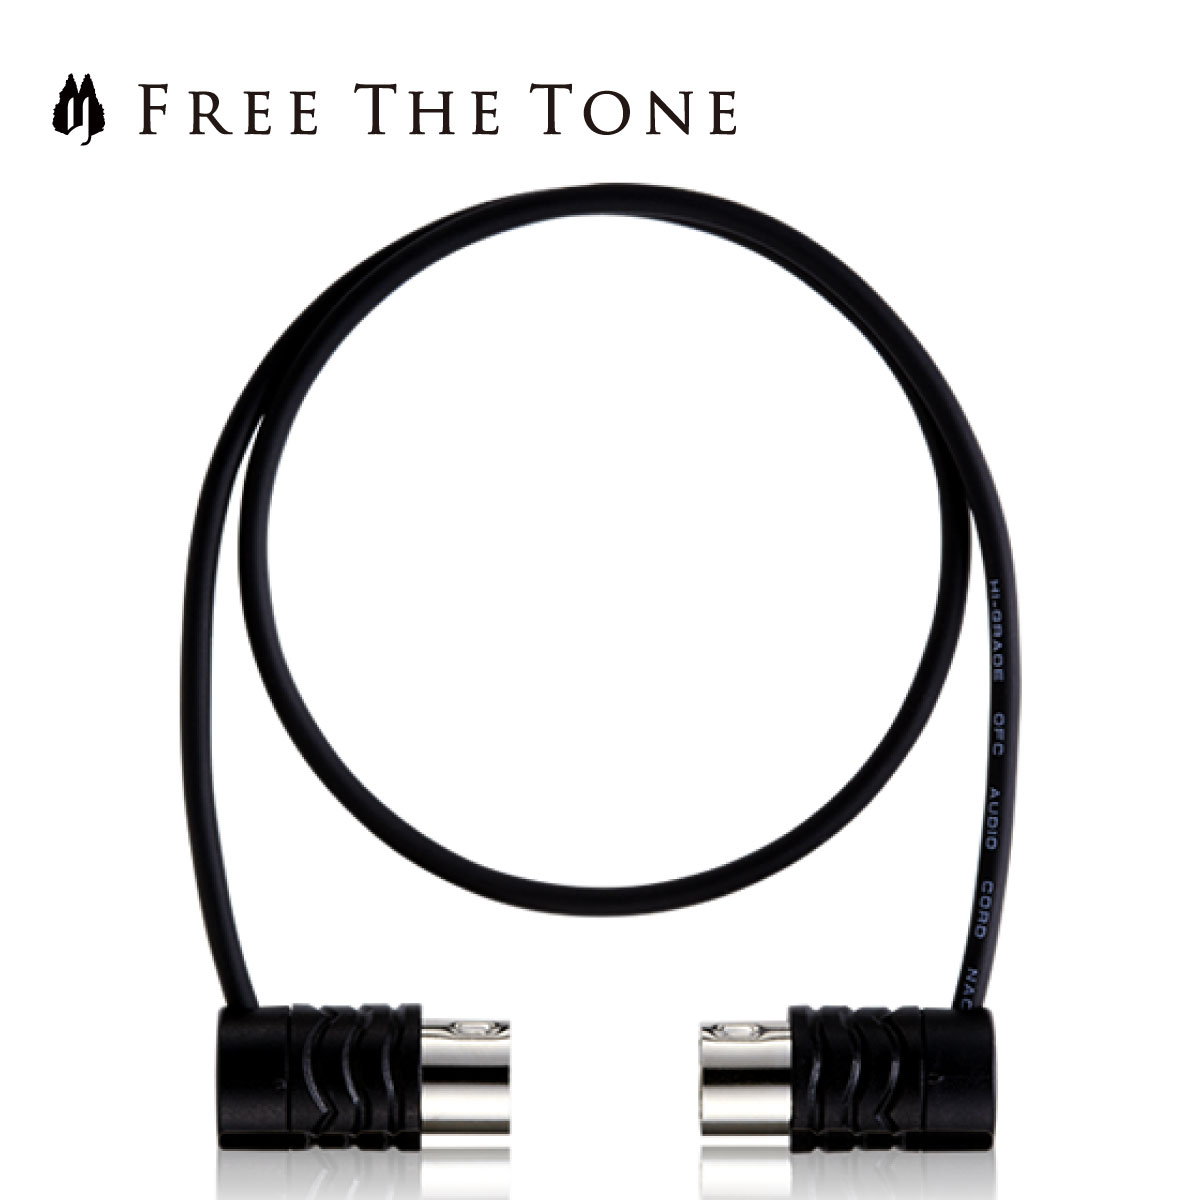 Free The Tone MIDI CABLE CM-3510 80cm MIDIケーブル 新品[フリーザトーン]